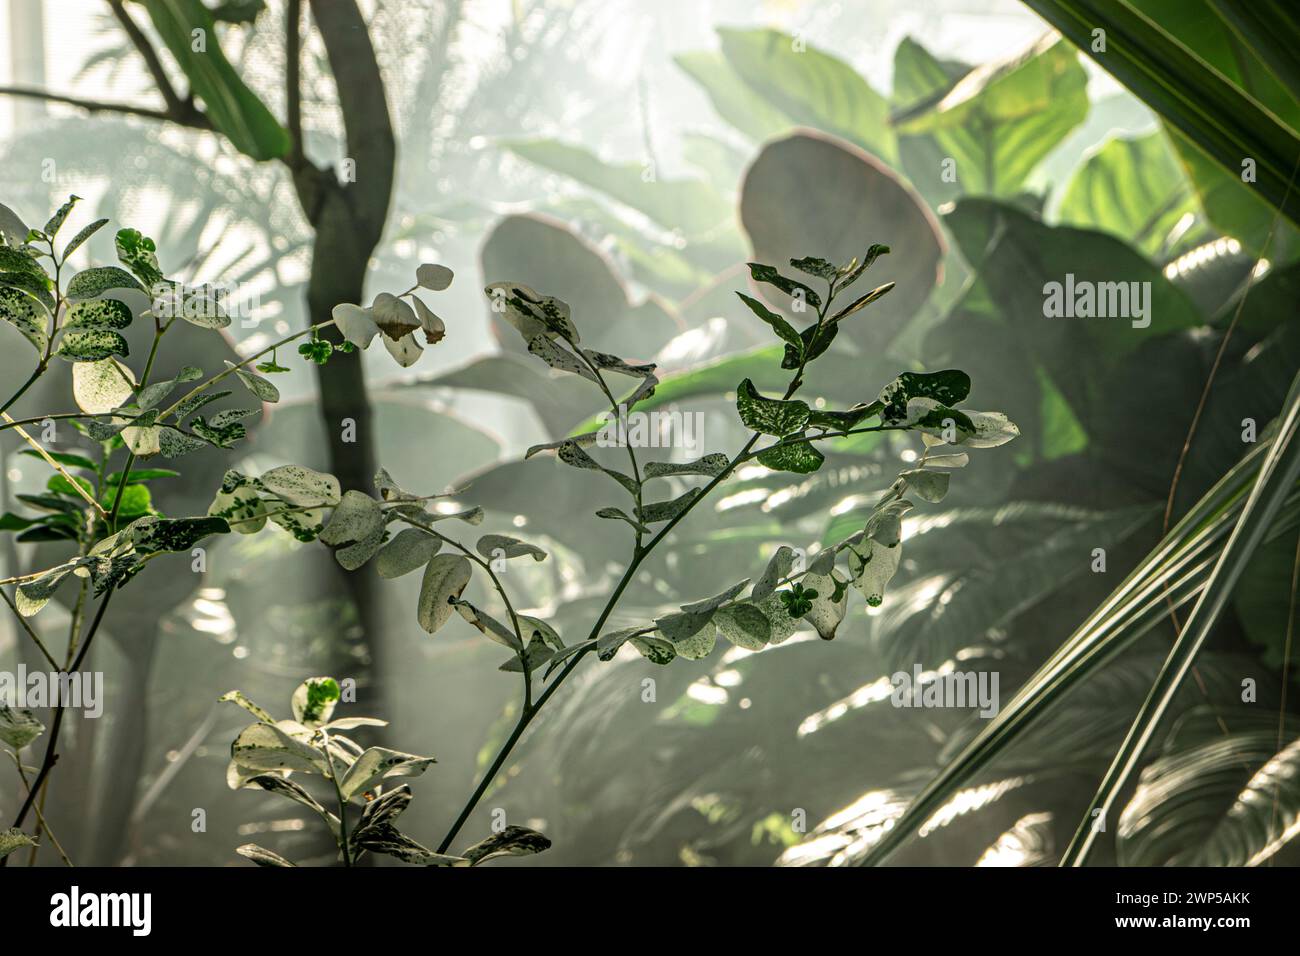 Breynia disticha ist eine Pflanze aus der Familie Phyllanthaceae, die bei heißen tropischen Bedingungen im Morgennebel auftritt. PlantaeTracheophyten Angiosperms Eudicots Rosids Malpighiales Phyllanthaceae Breynia. Breynia nivosa besitzt analgetische, entzündungshemmende und antimikrobielle Eigenschaften Stockfoto